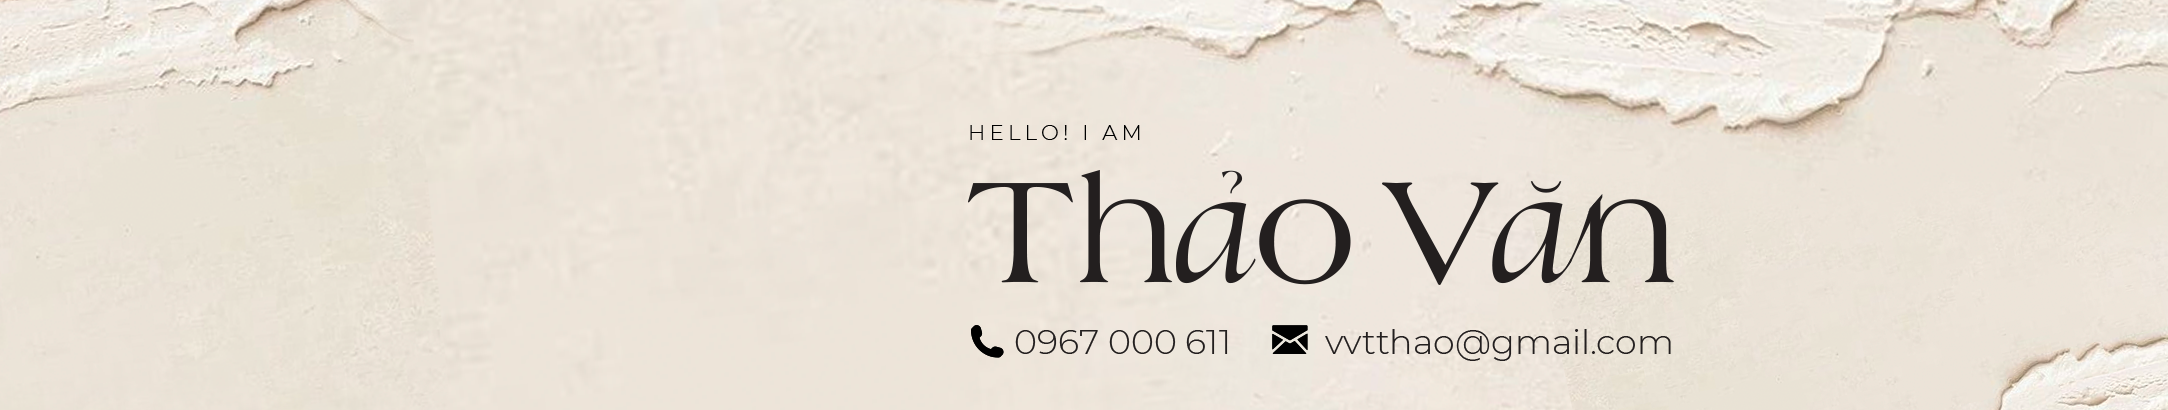 Profil-Banner von Thao Van